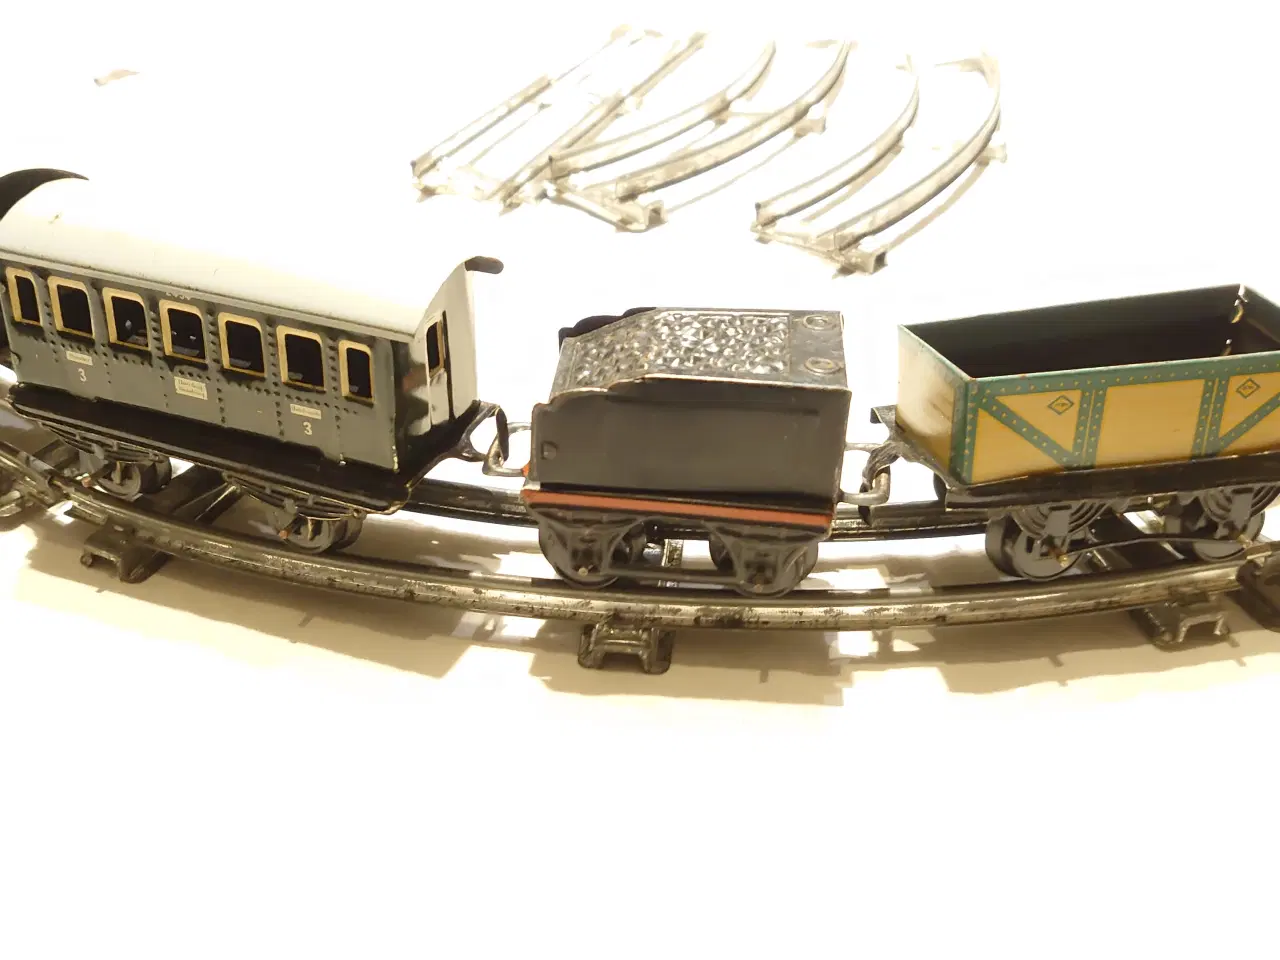 Billede 3 - Gammel togbane med optrækslokomotiv, vogne mm.